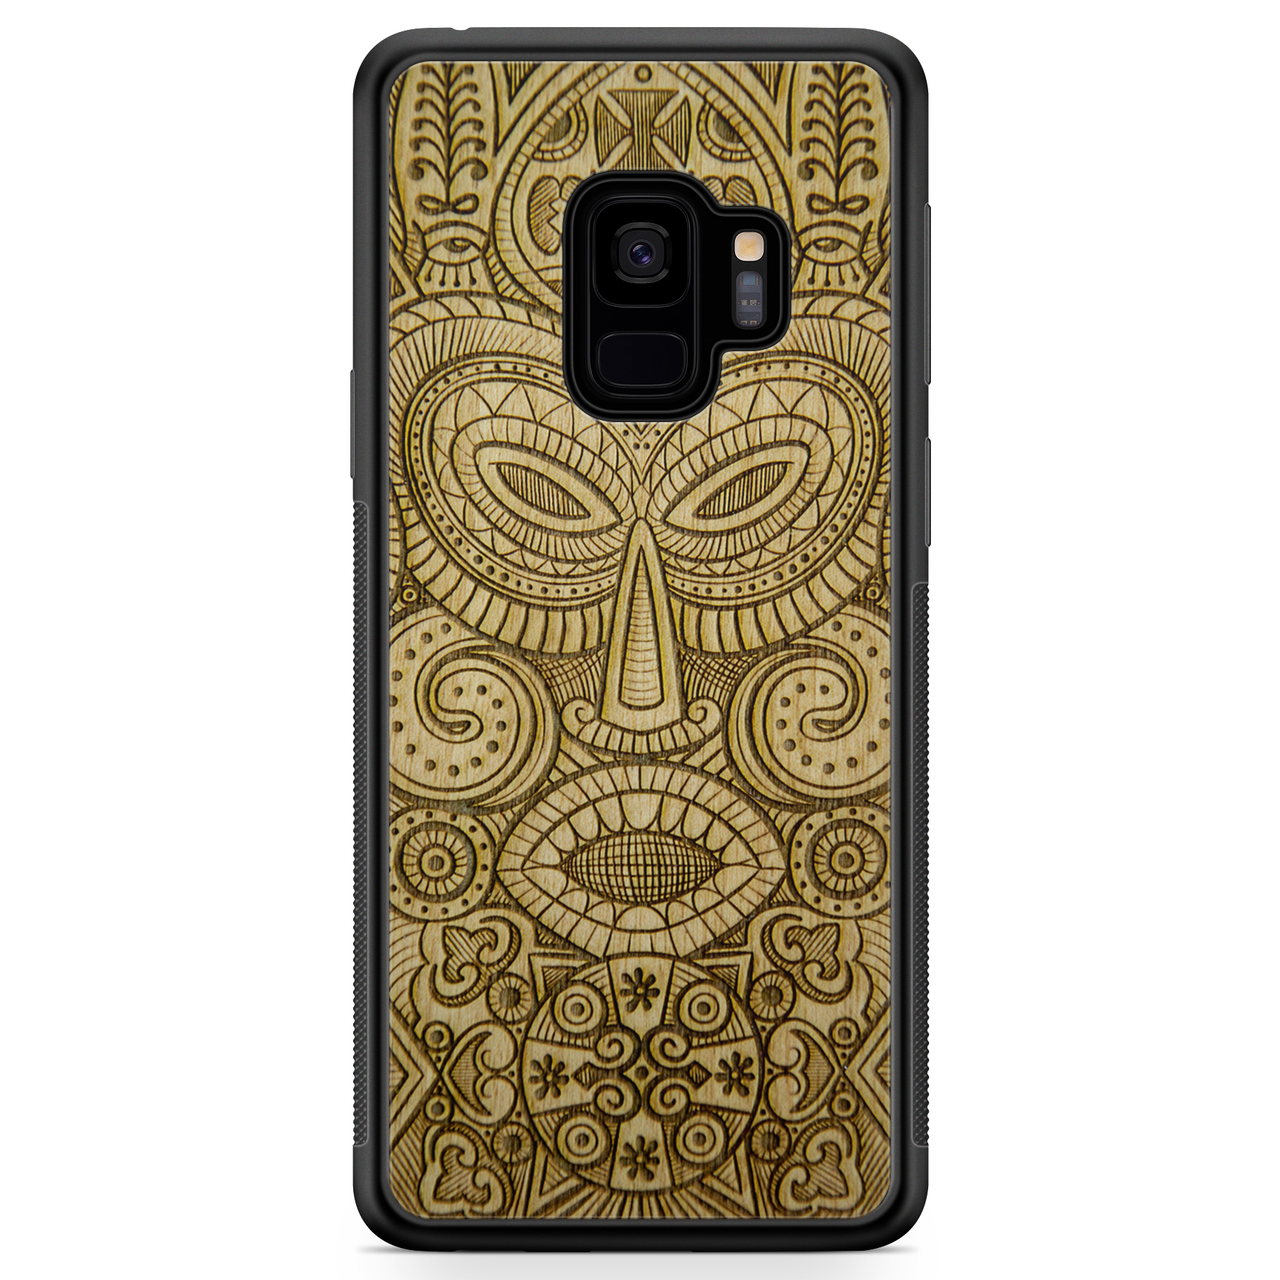 Custodia in legno per telefono Samsung S9 maschera tribale